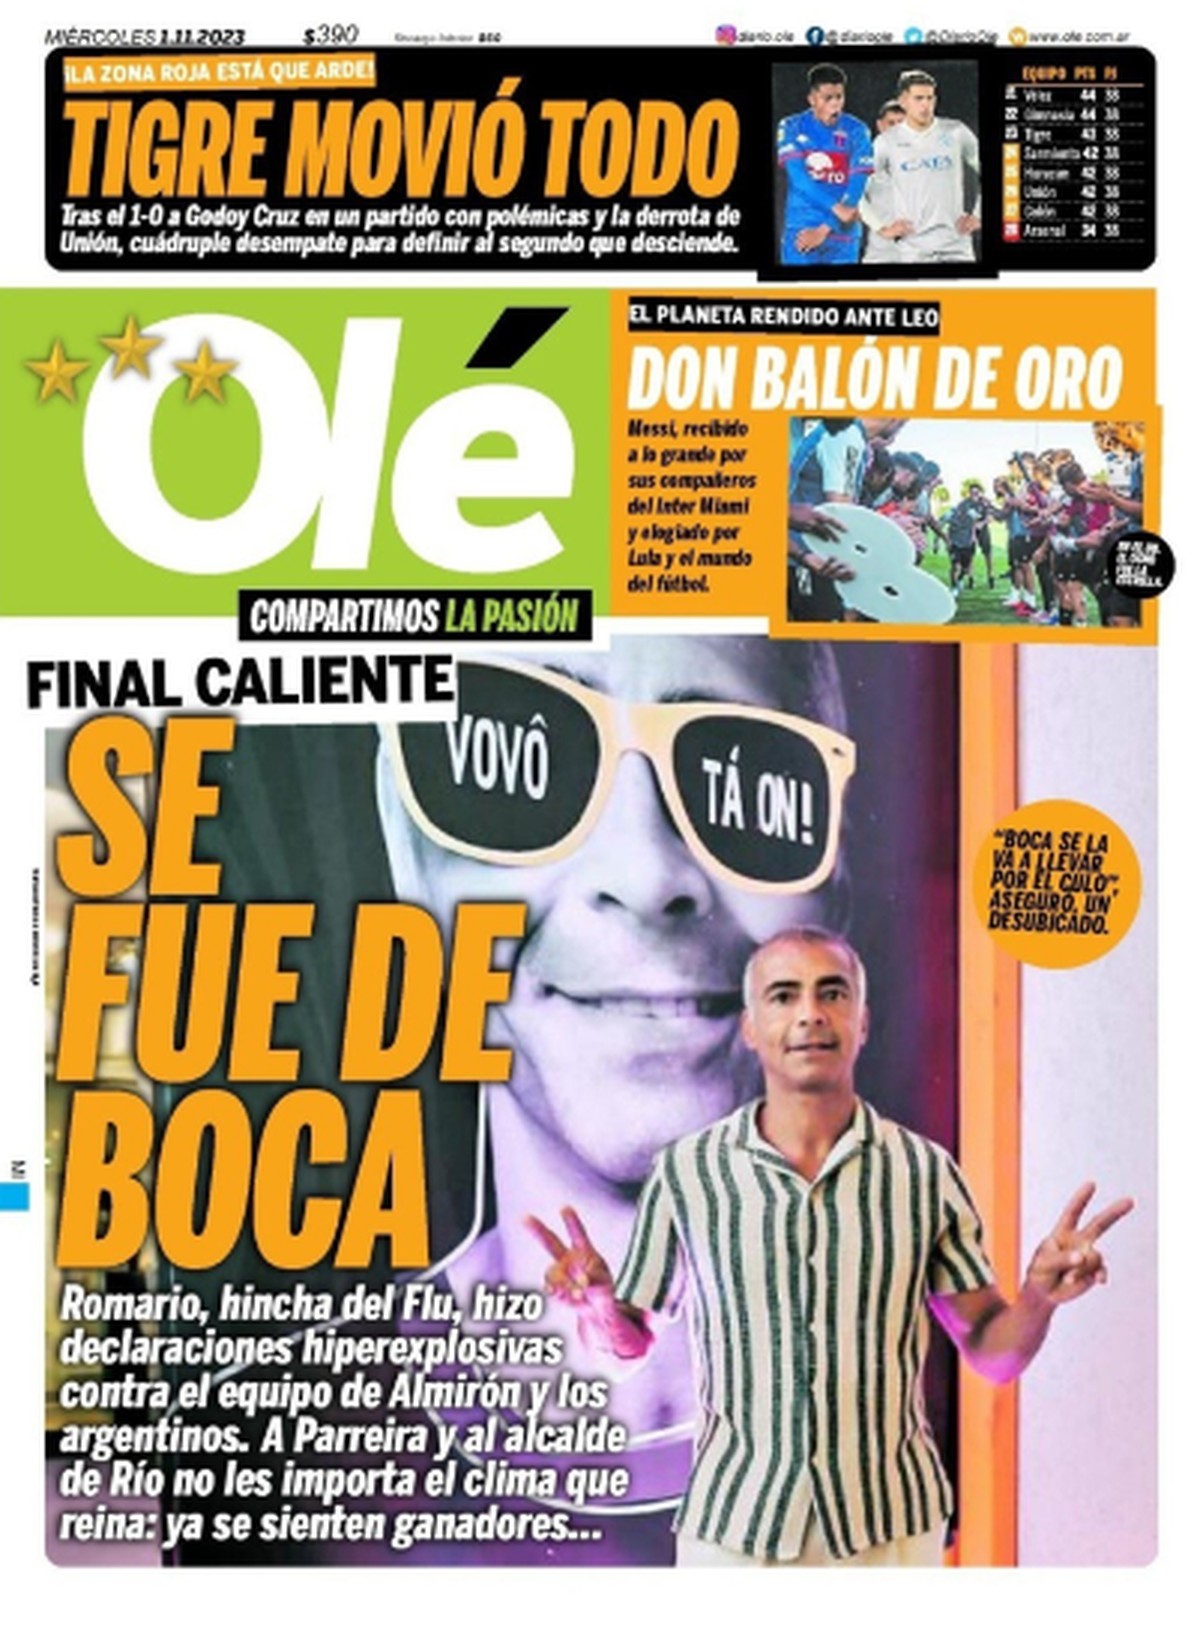 Diario argentino expone las “declaraciones hiperexplosivas” de Romário sobre el país y Boca Juniors, rival de la gripe en la Libertadores: “Ya se sienten ganadores”